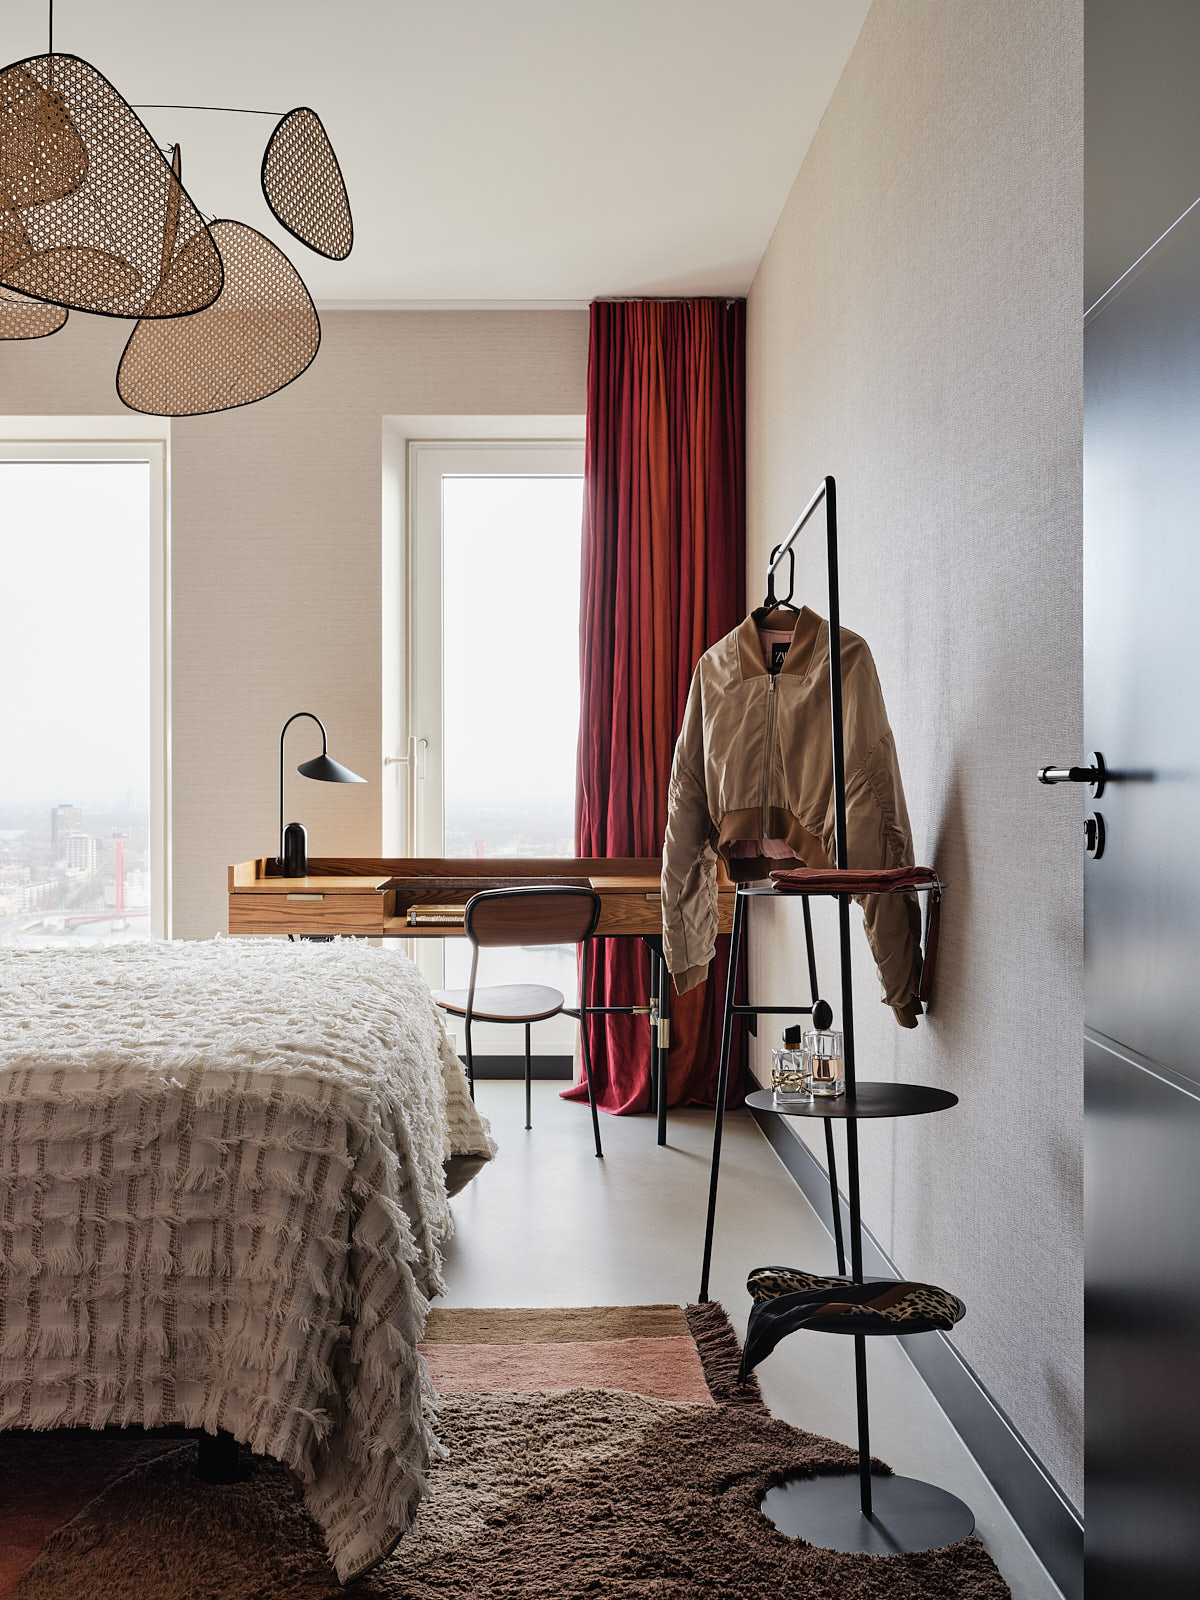 zwart stalen kledingrek, rode gordijnen, houten bureau en een rotan hanglamp boven bed.